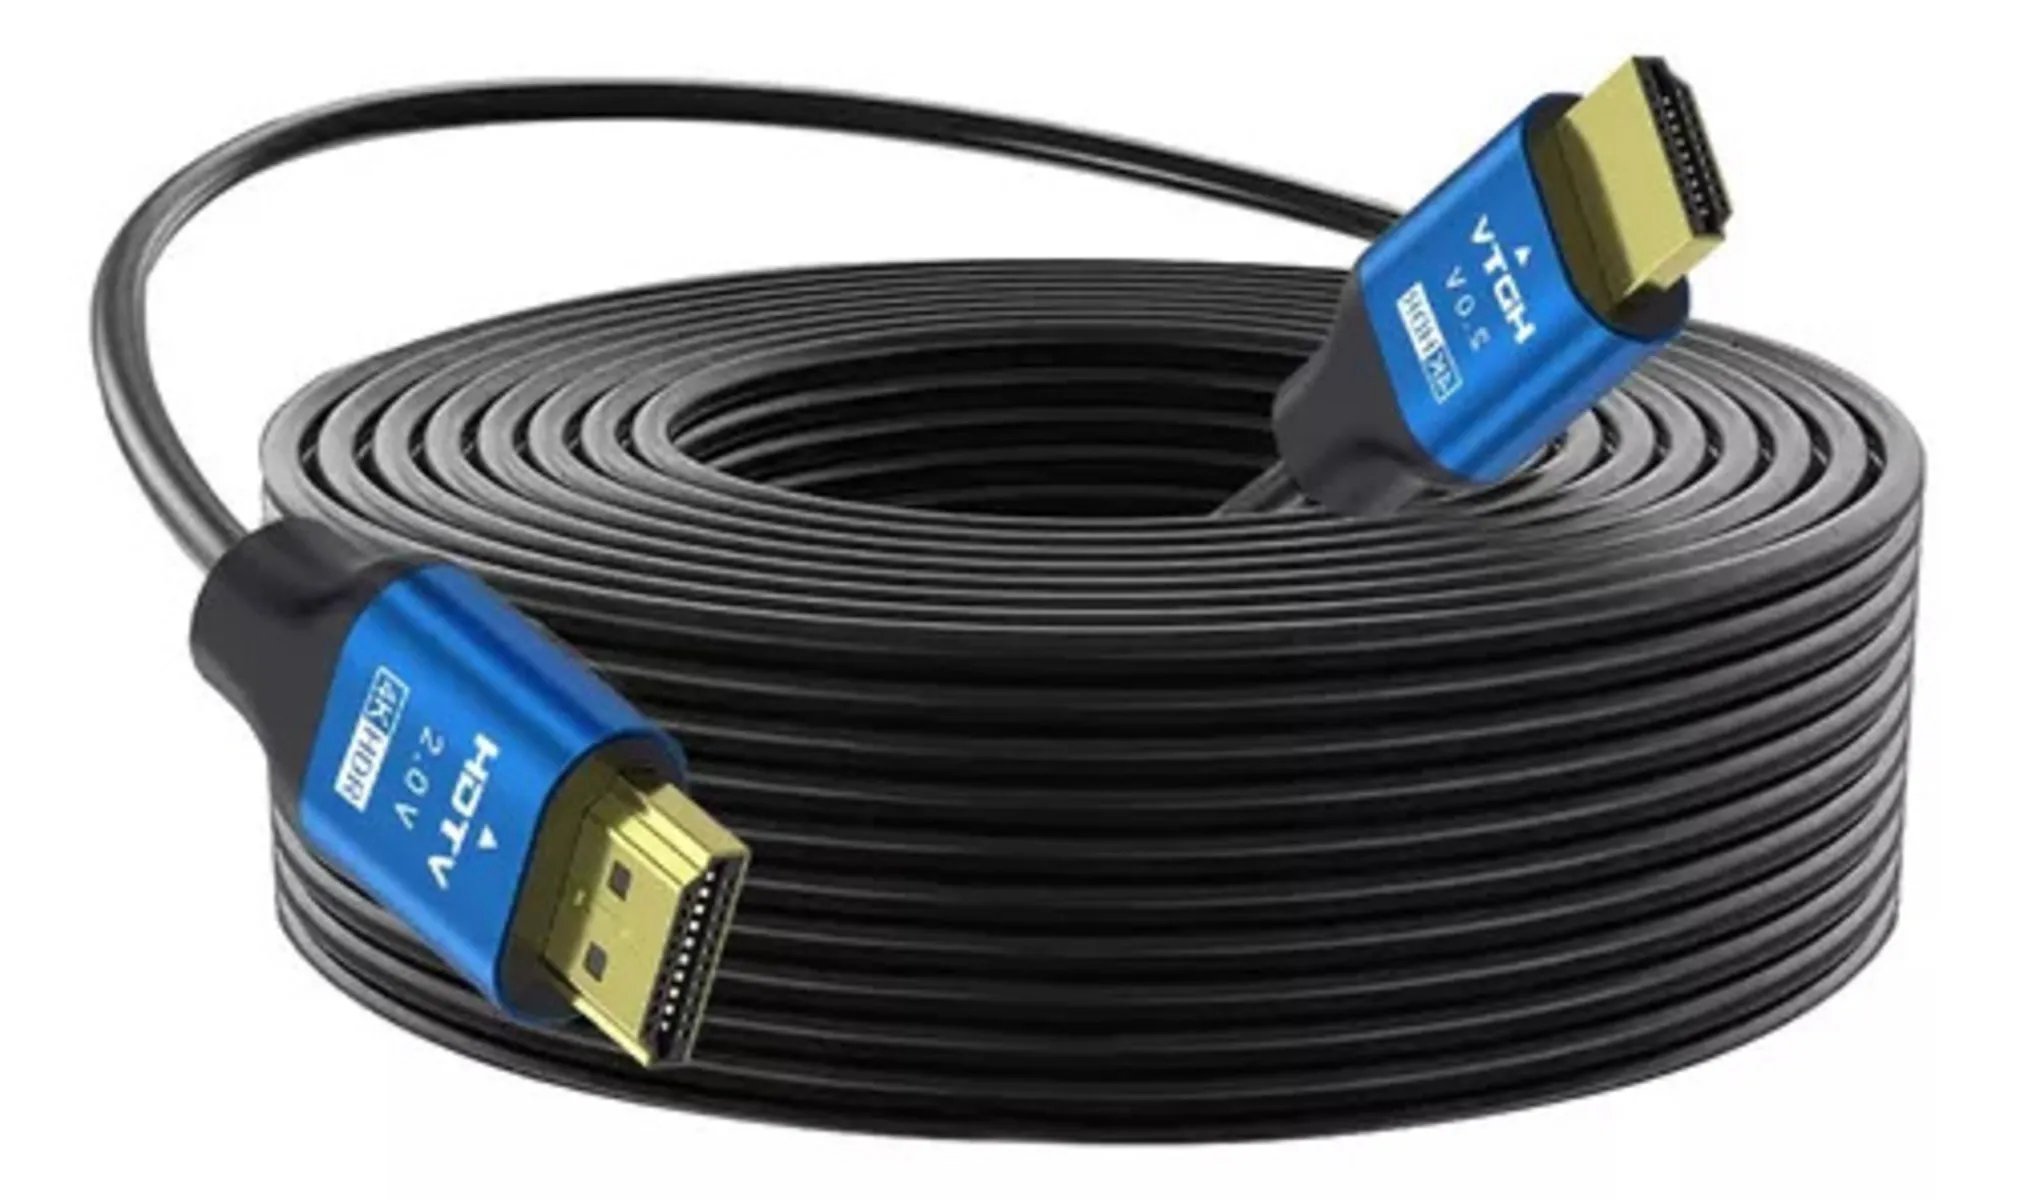 Cable Hdmi 4k Uhd V 2.0 2160p 3 Metros De Alta Velocidad